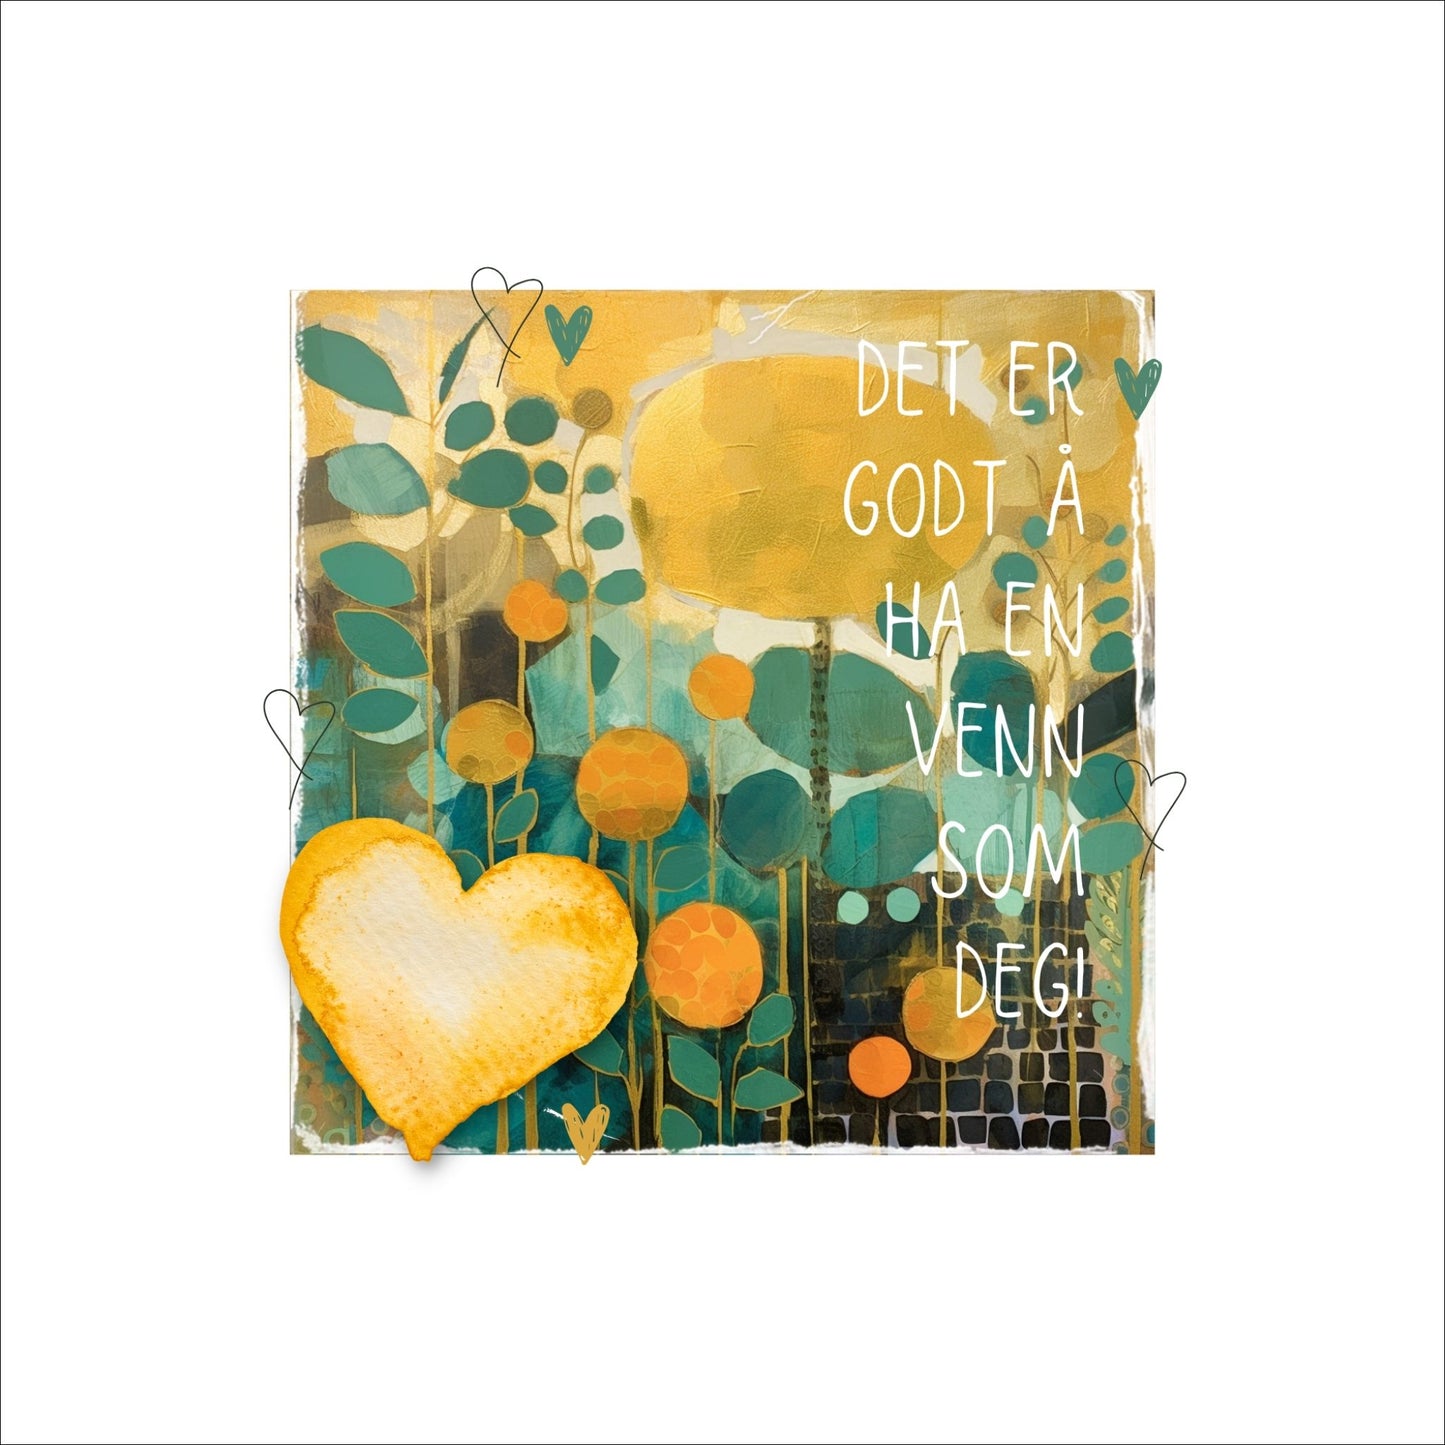 Plakat med lysegult hjerte og tekst "Det er godt å ha en venn som deg" - og et motiv med farger i grønn, gul og oransje. Med hvit kant på 4 cm. 